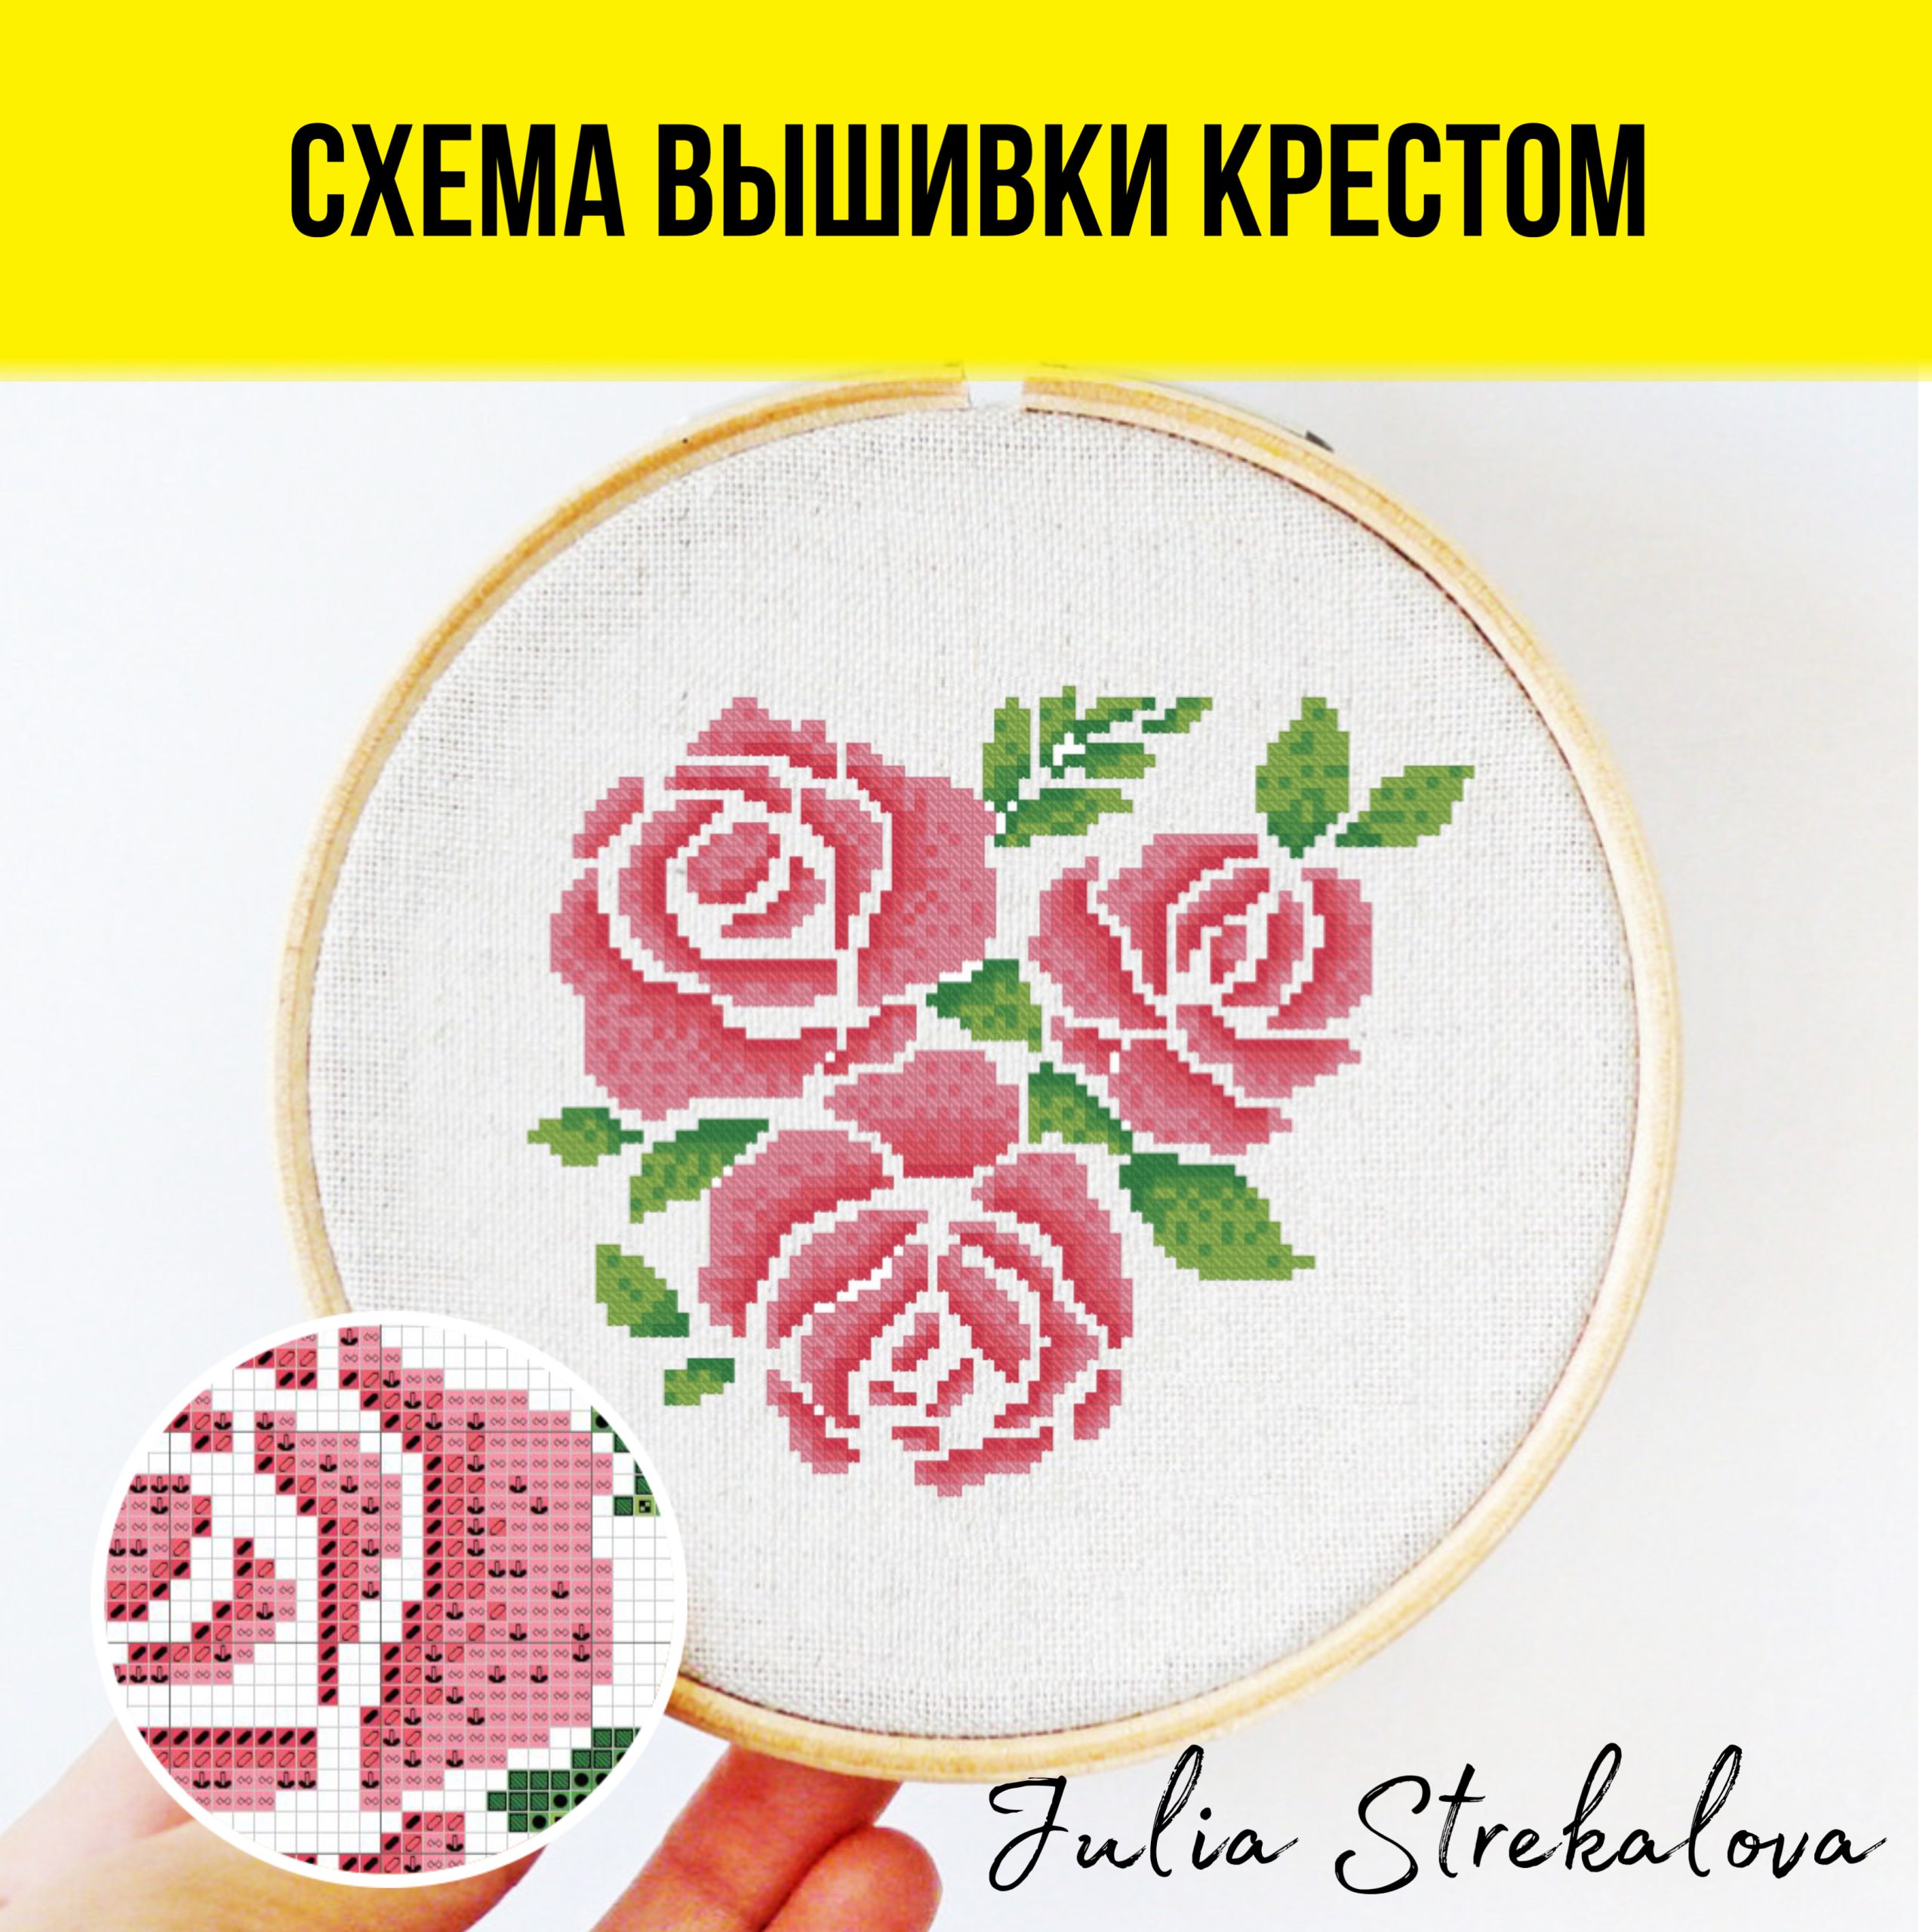 Авторская схема вышивания крестиком c монохромным сюжетом в виде цветков розы от Юлии Стрекаловой. Подойдет для декора и начинающих.